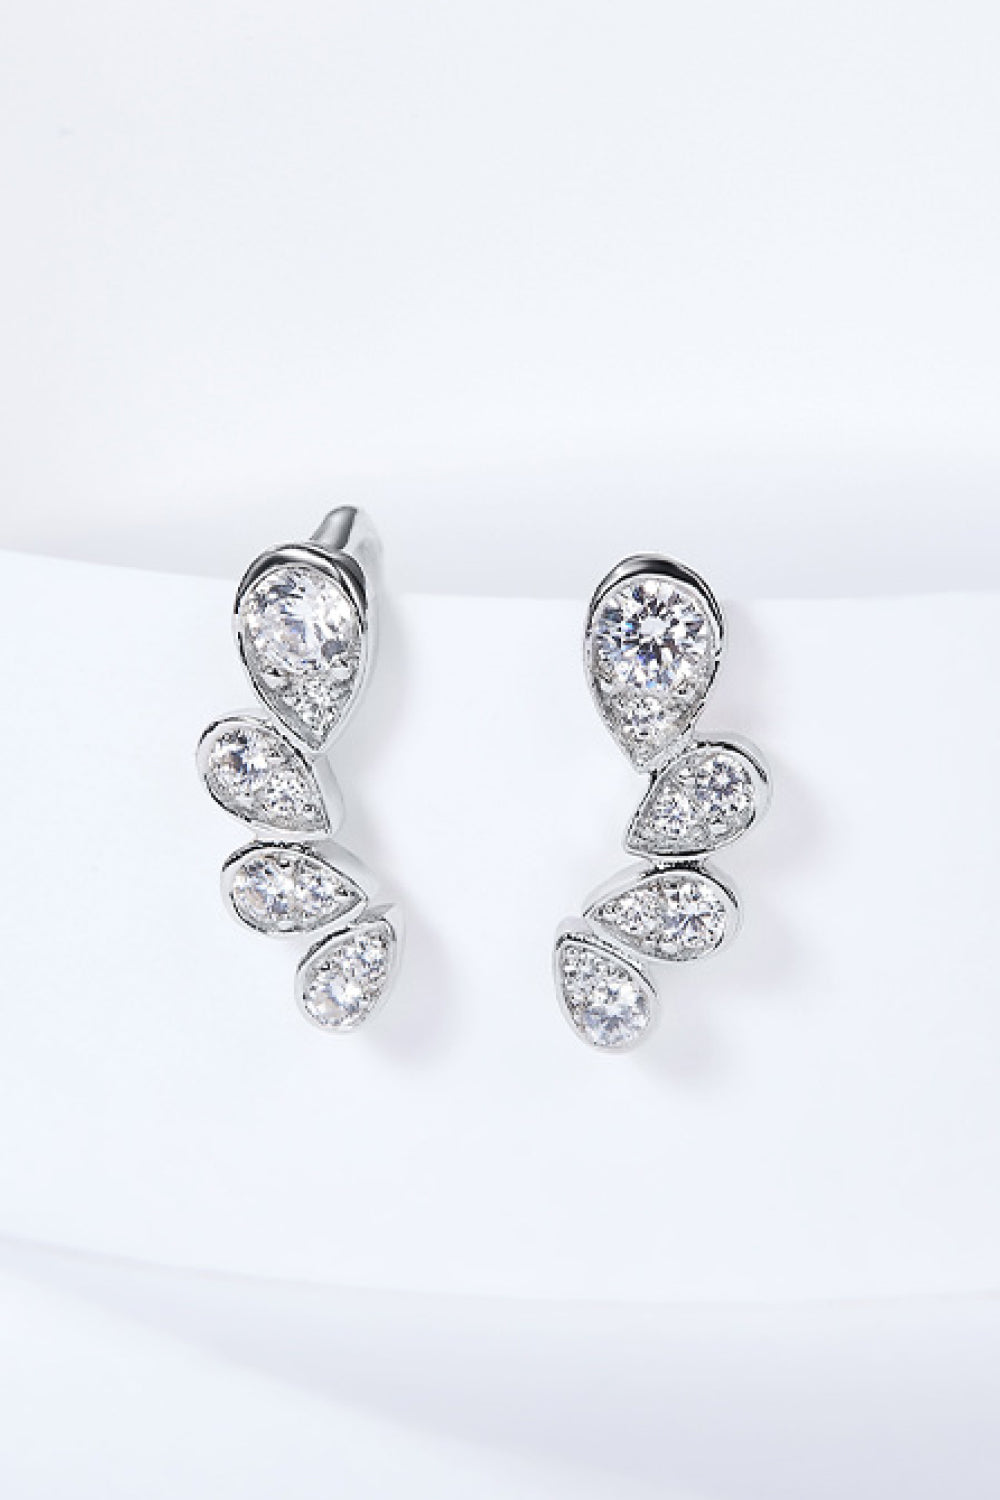 Pear Shape Moissanite Earrings - Earrings - FITGGINS